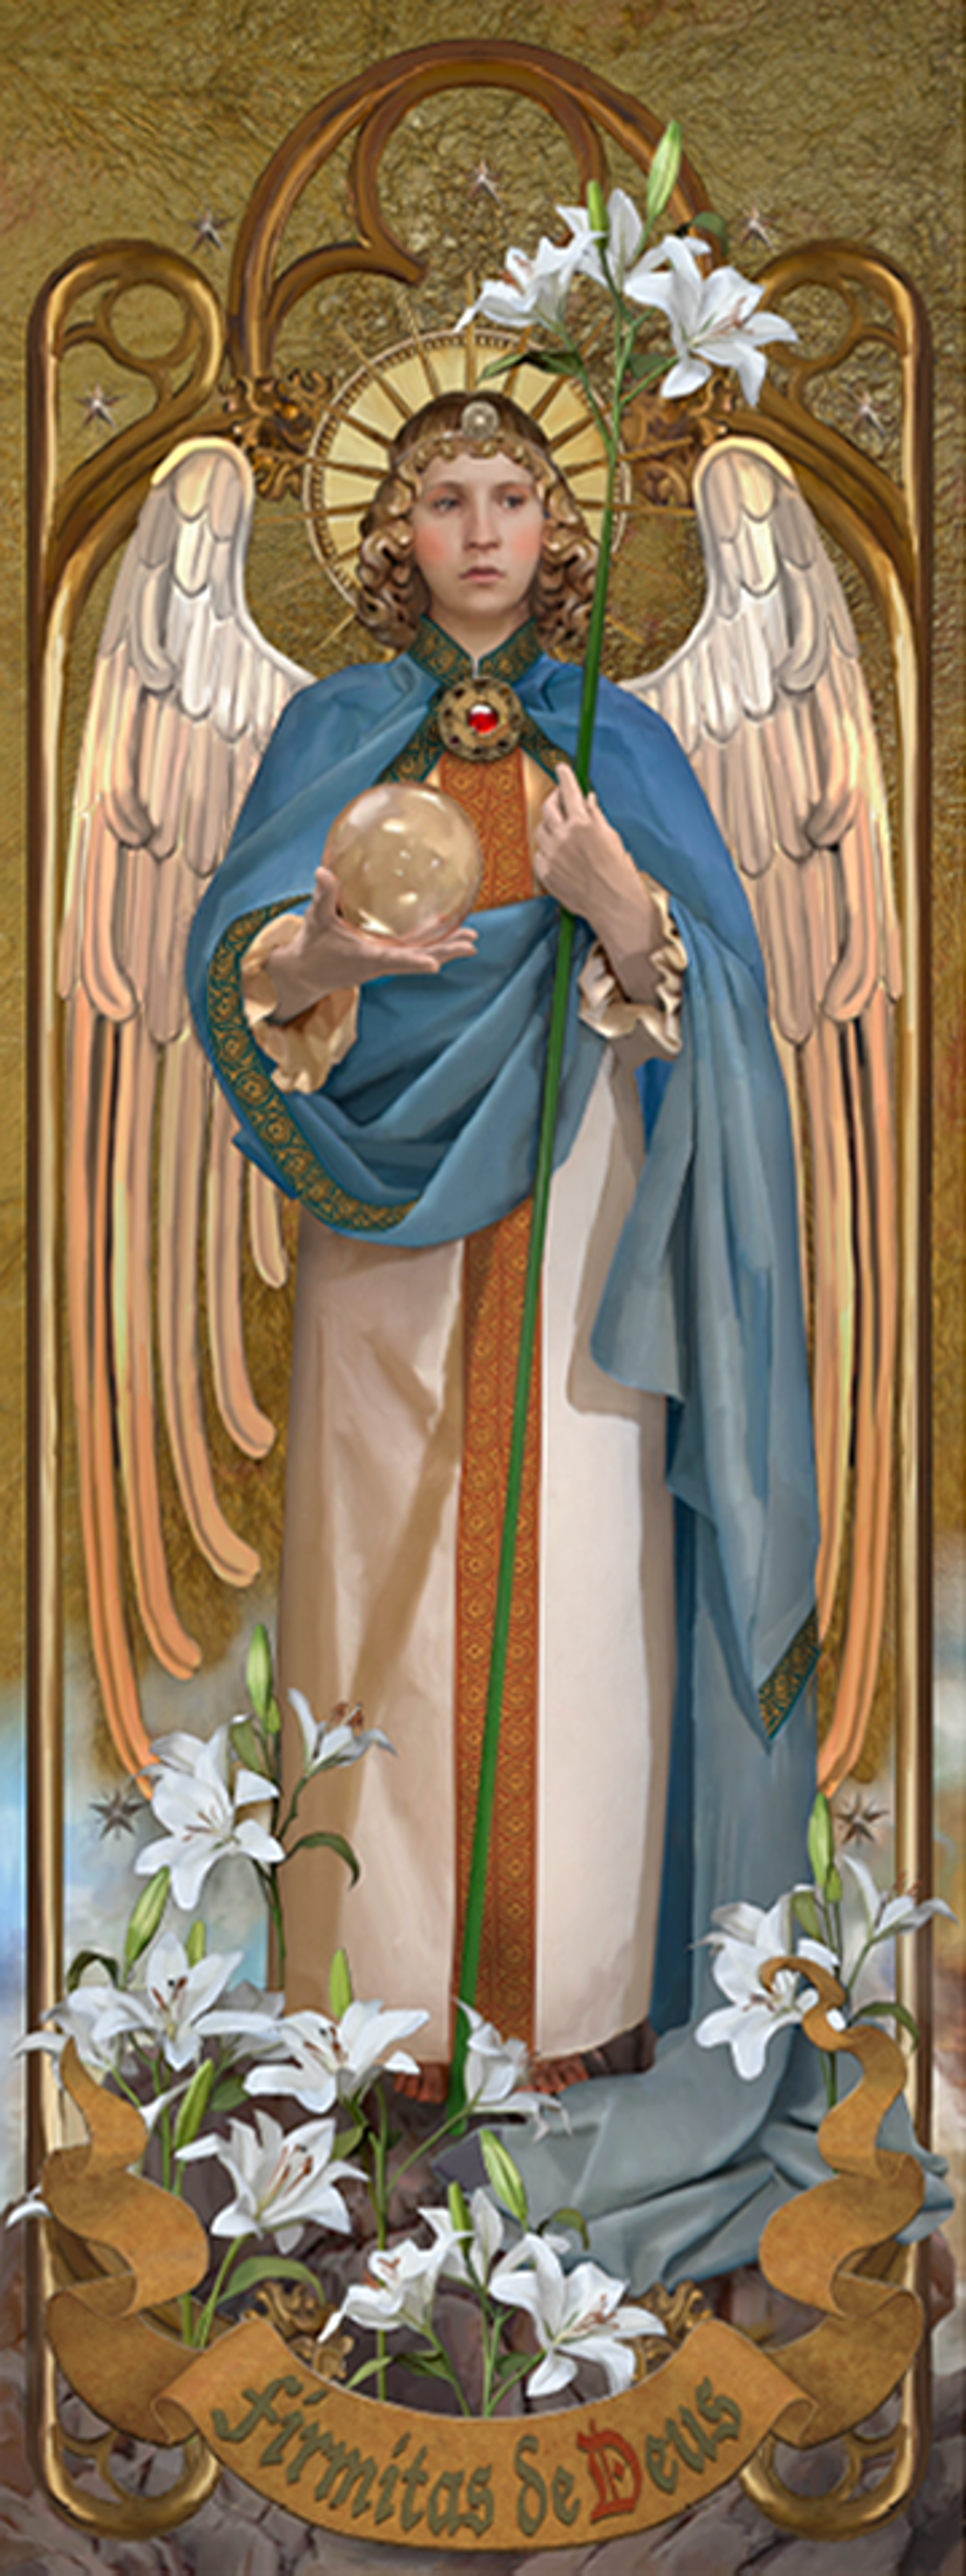 Archangel Gabriel by John Blumen